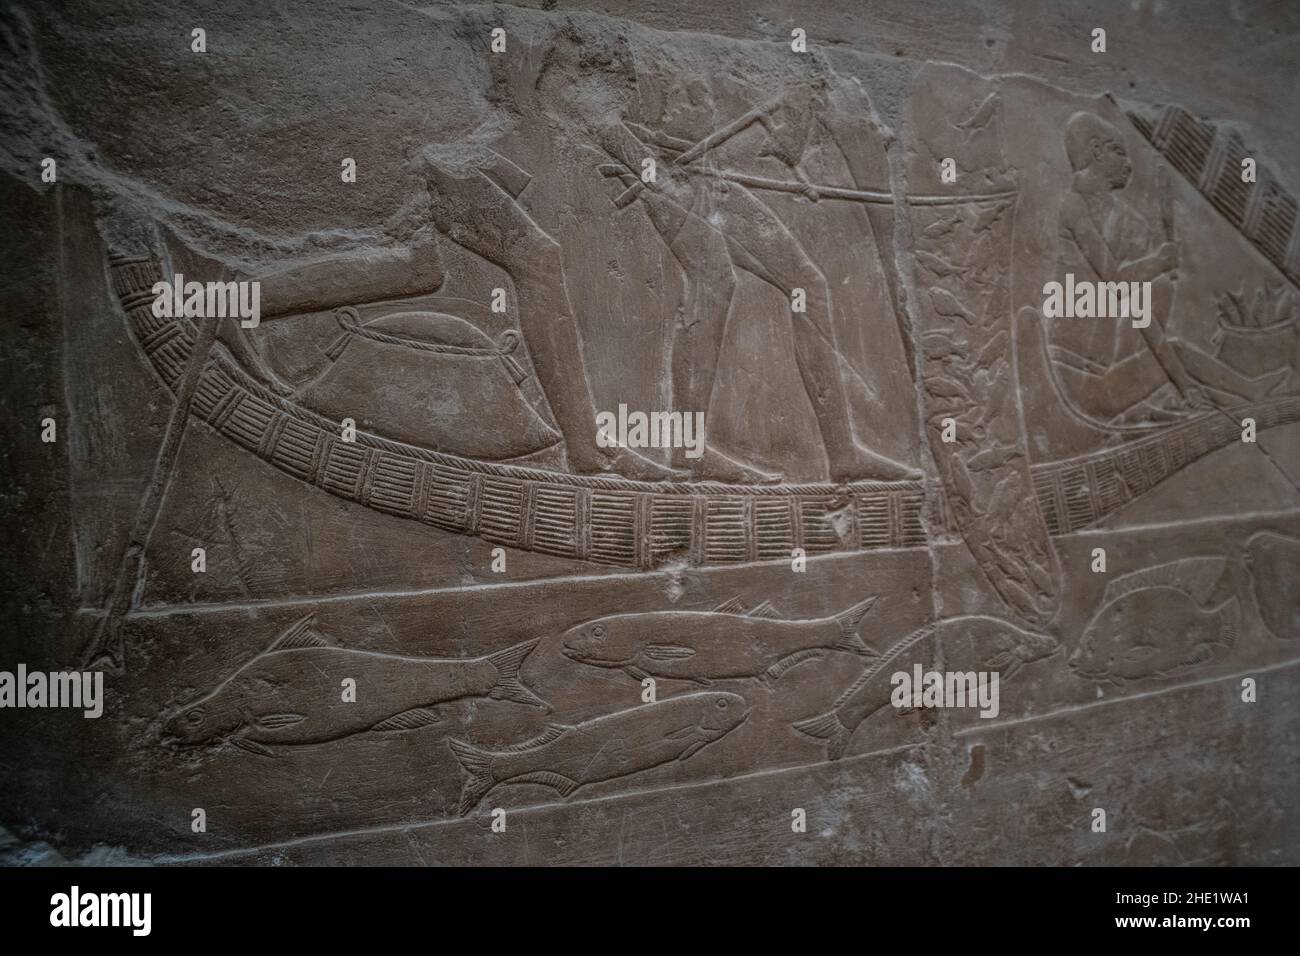 Un'antica scultura in rilievo nella necropoli di Saqqara in Egitto raffigurante una barca e pesce nel fiume Nilo. Foto Stock